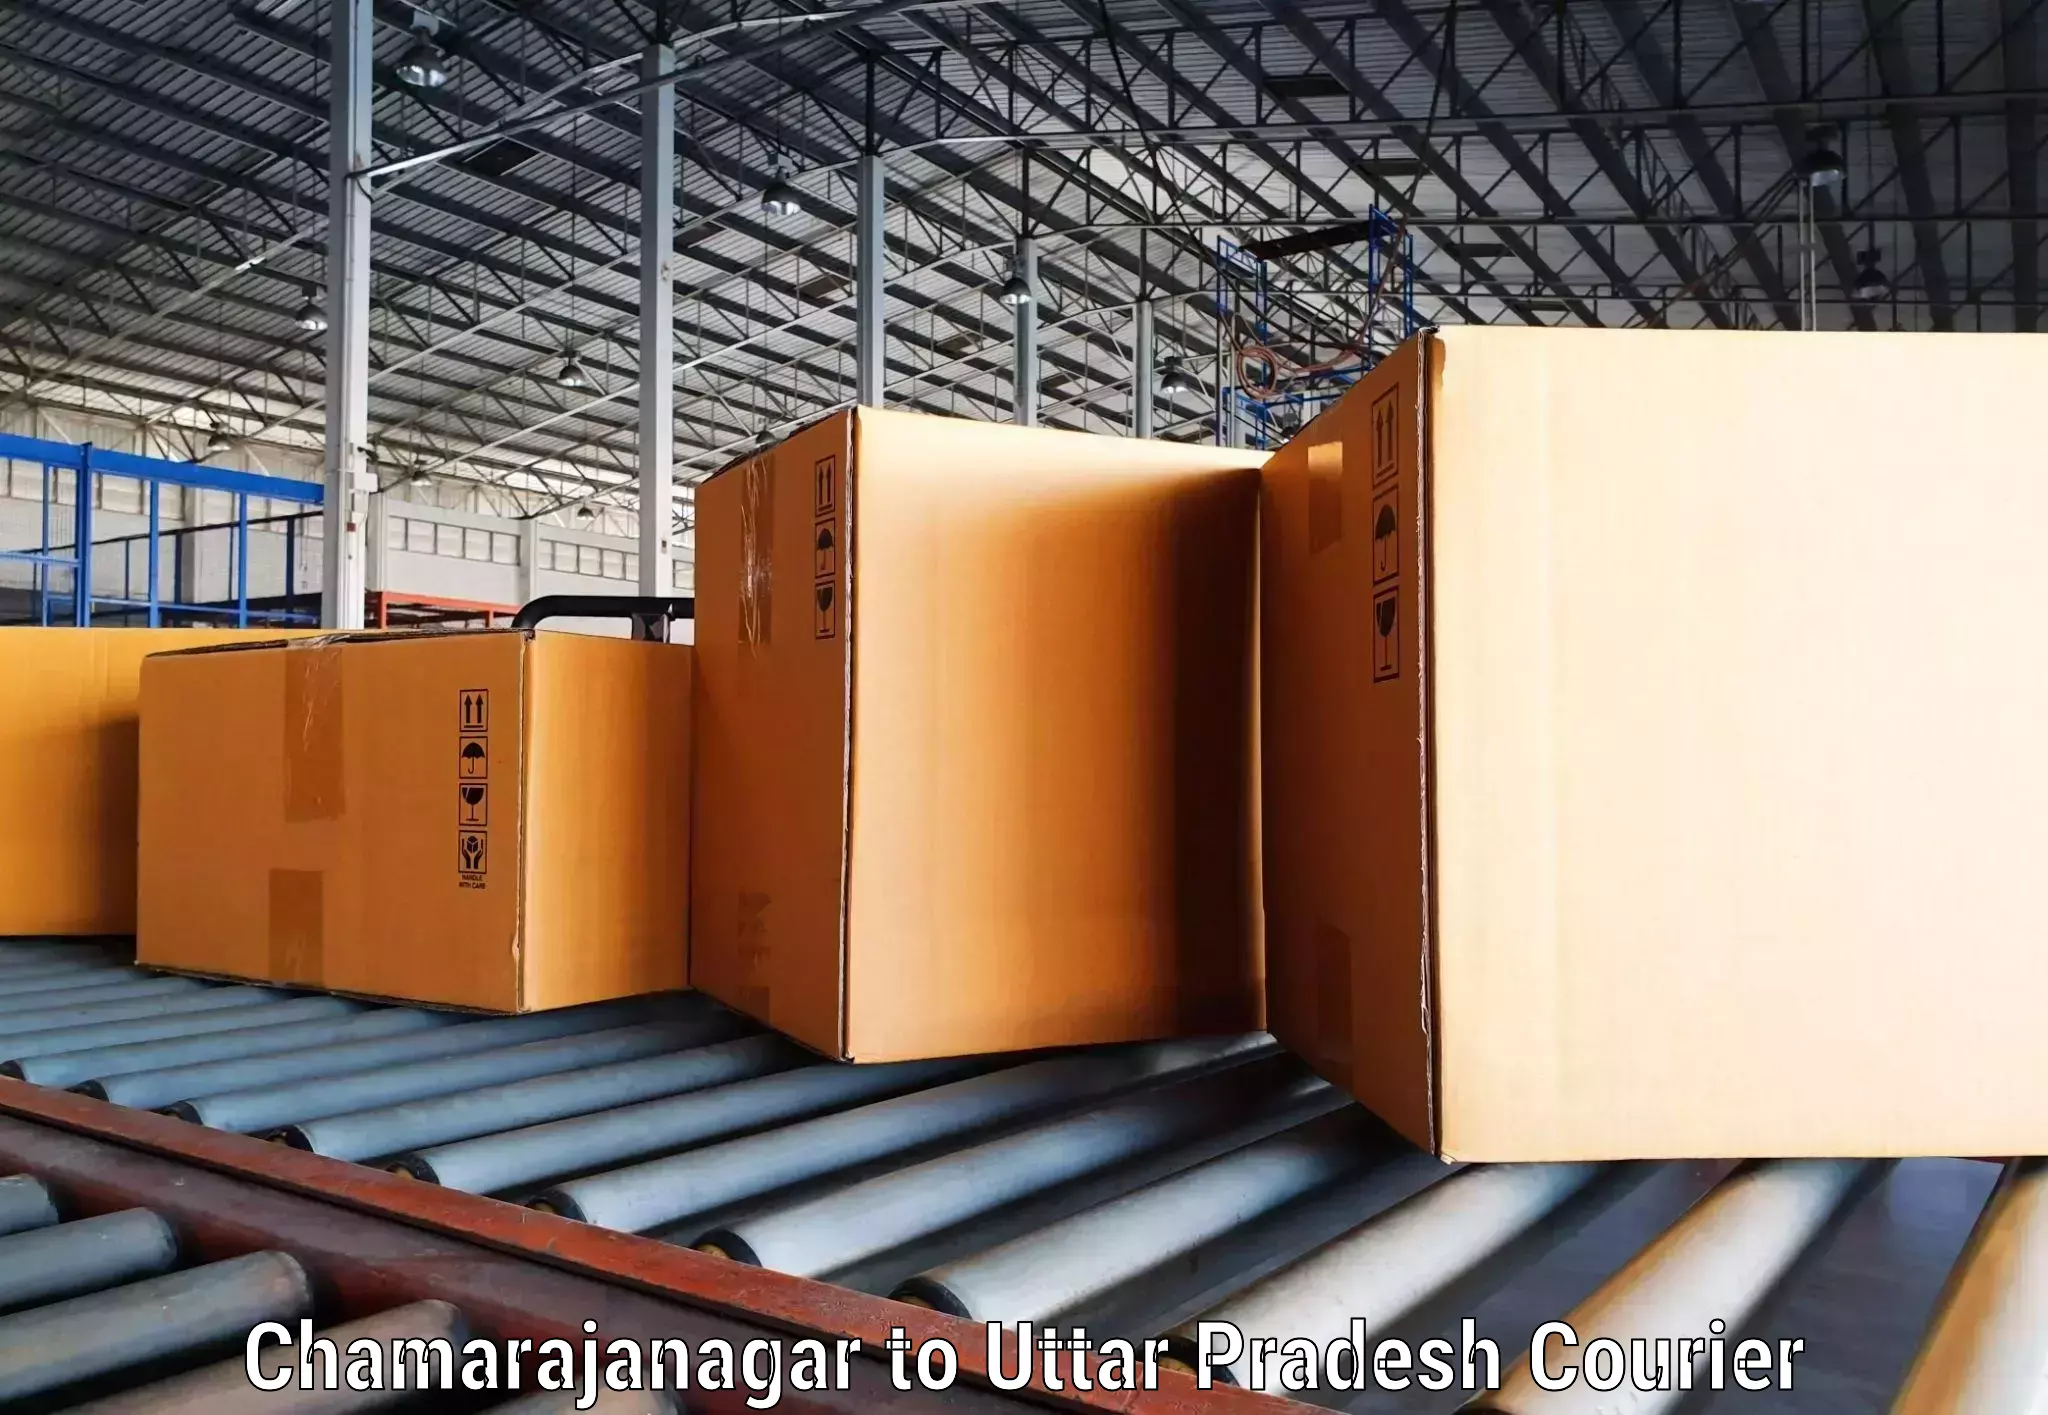 Door-to-door freight service Chamarajanagar to Kanpur